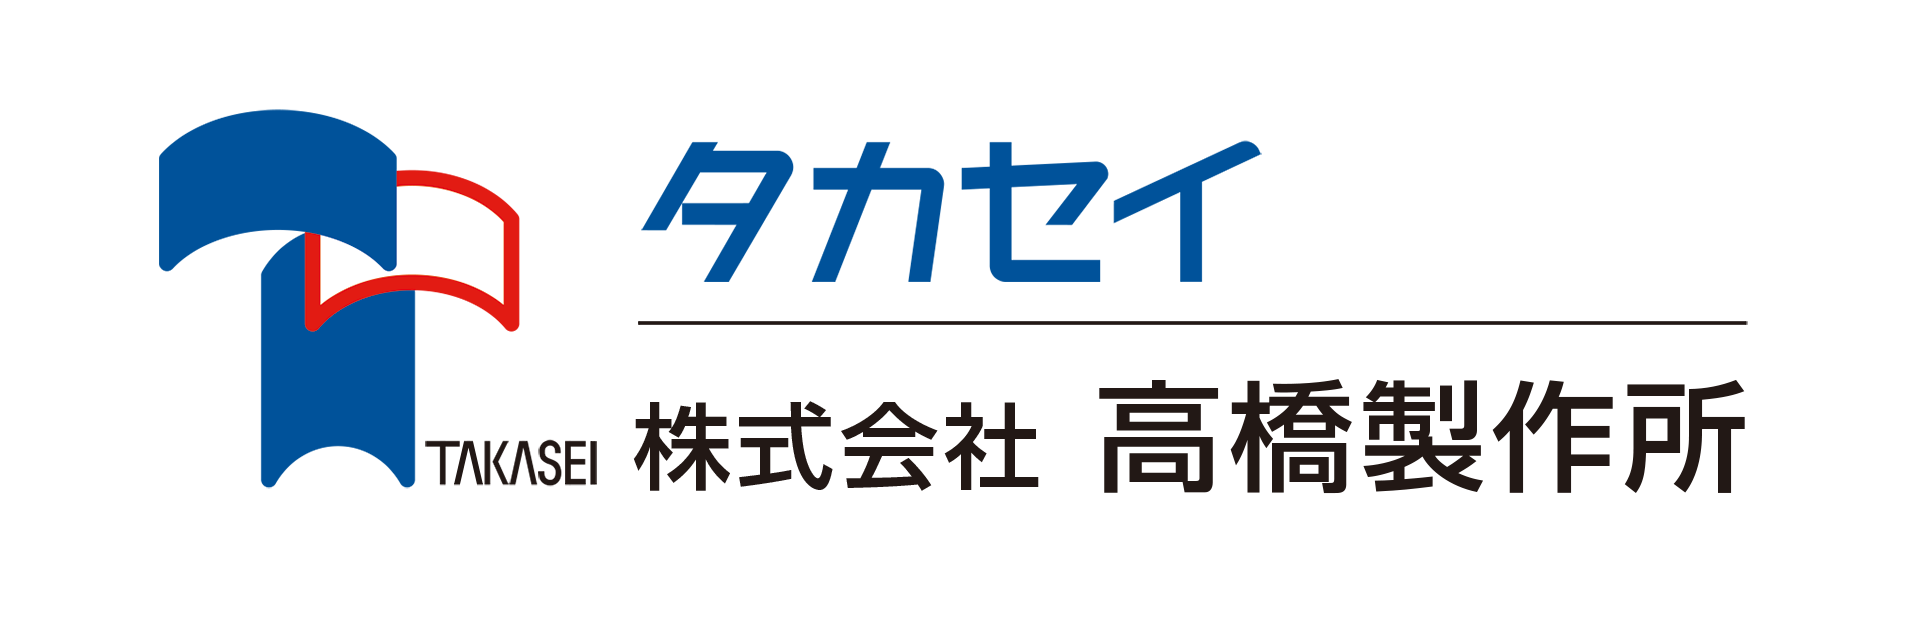 タカセイ-株式会社高橋製作所